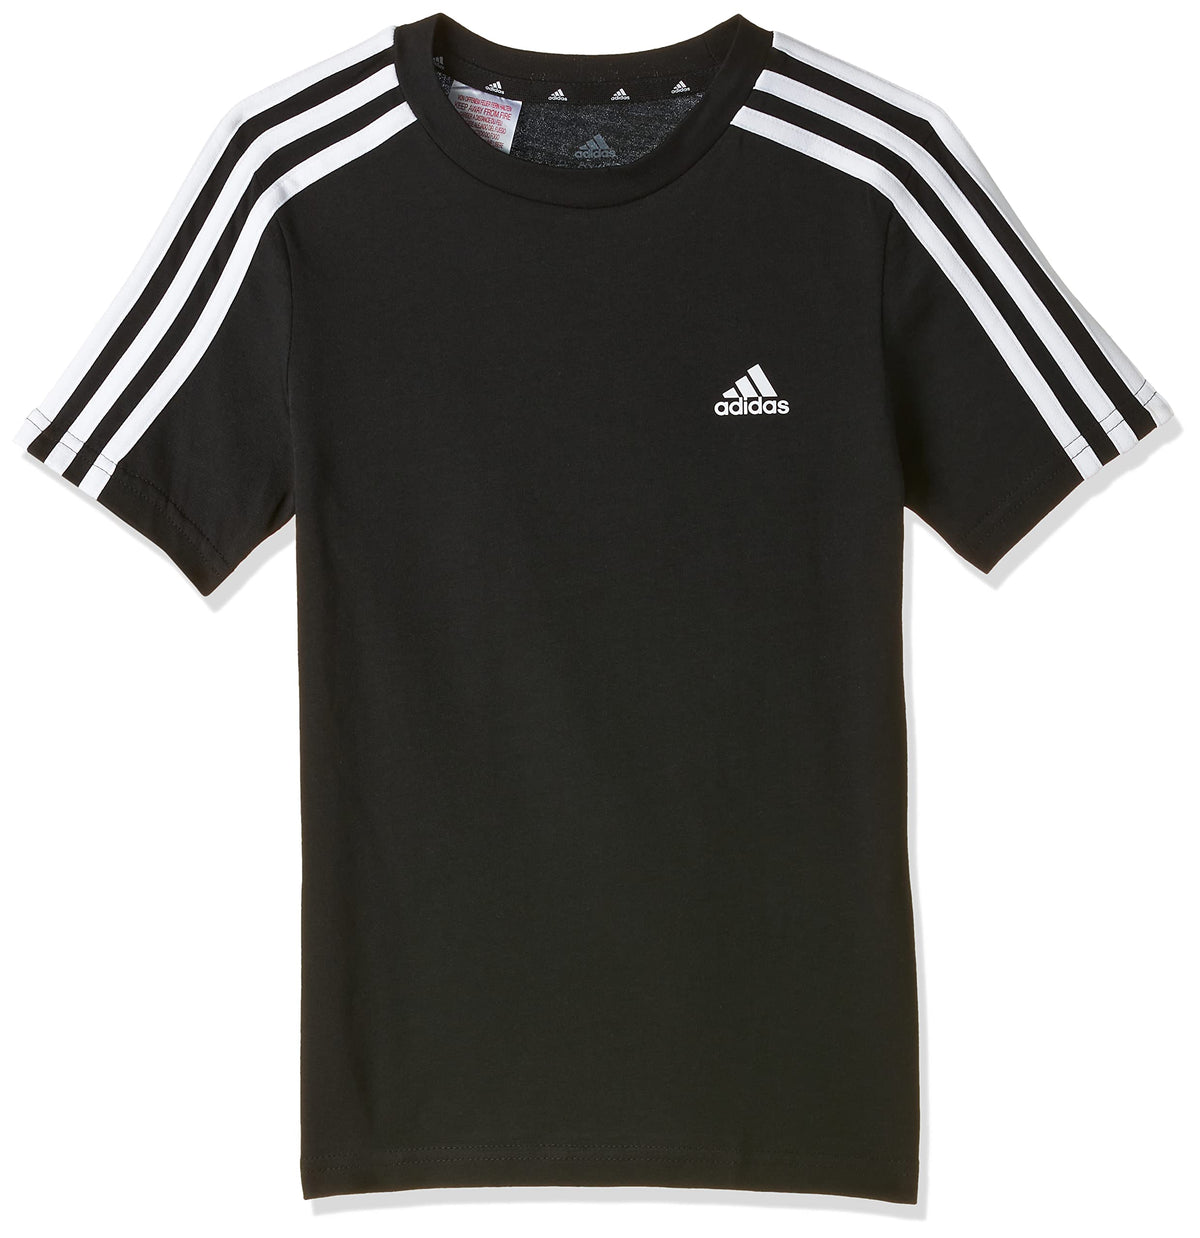 adidas Boys B 3s T Shirt, Black/White, 13 Years UK